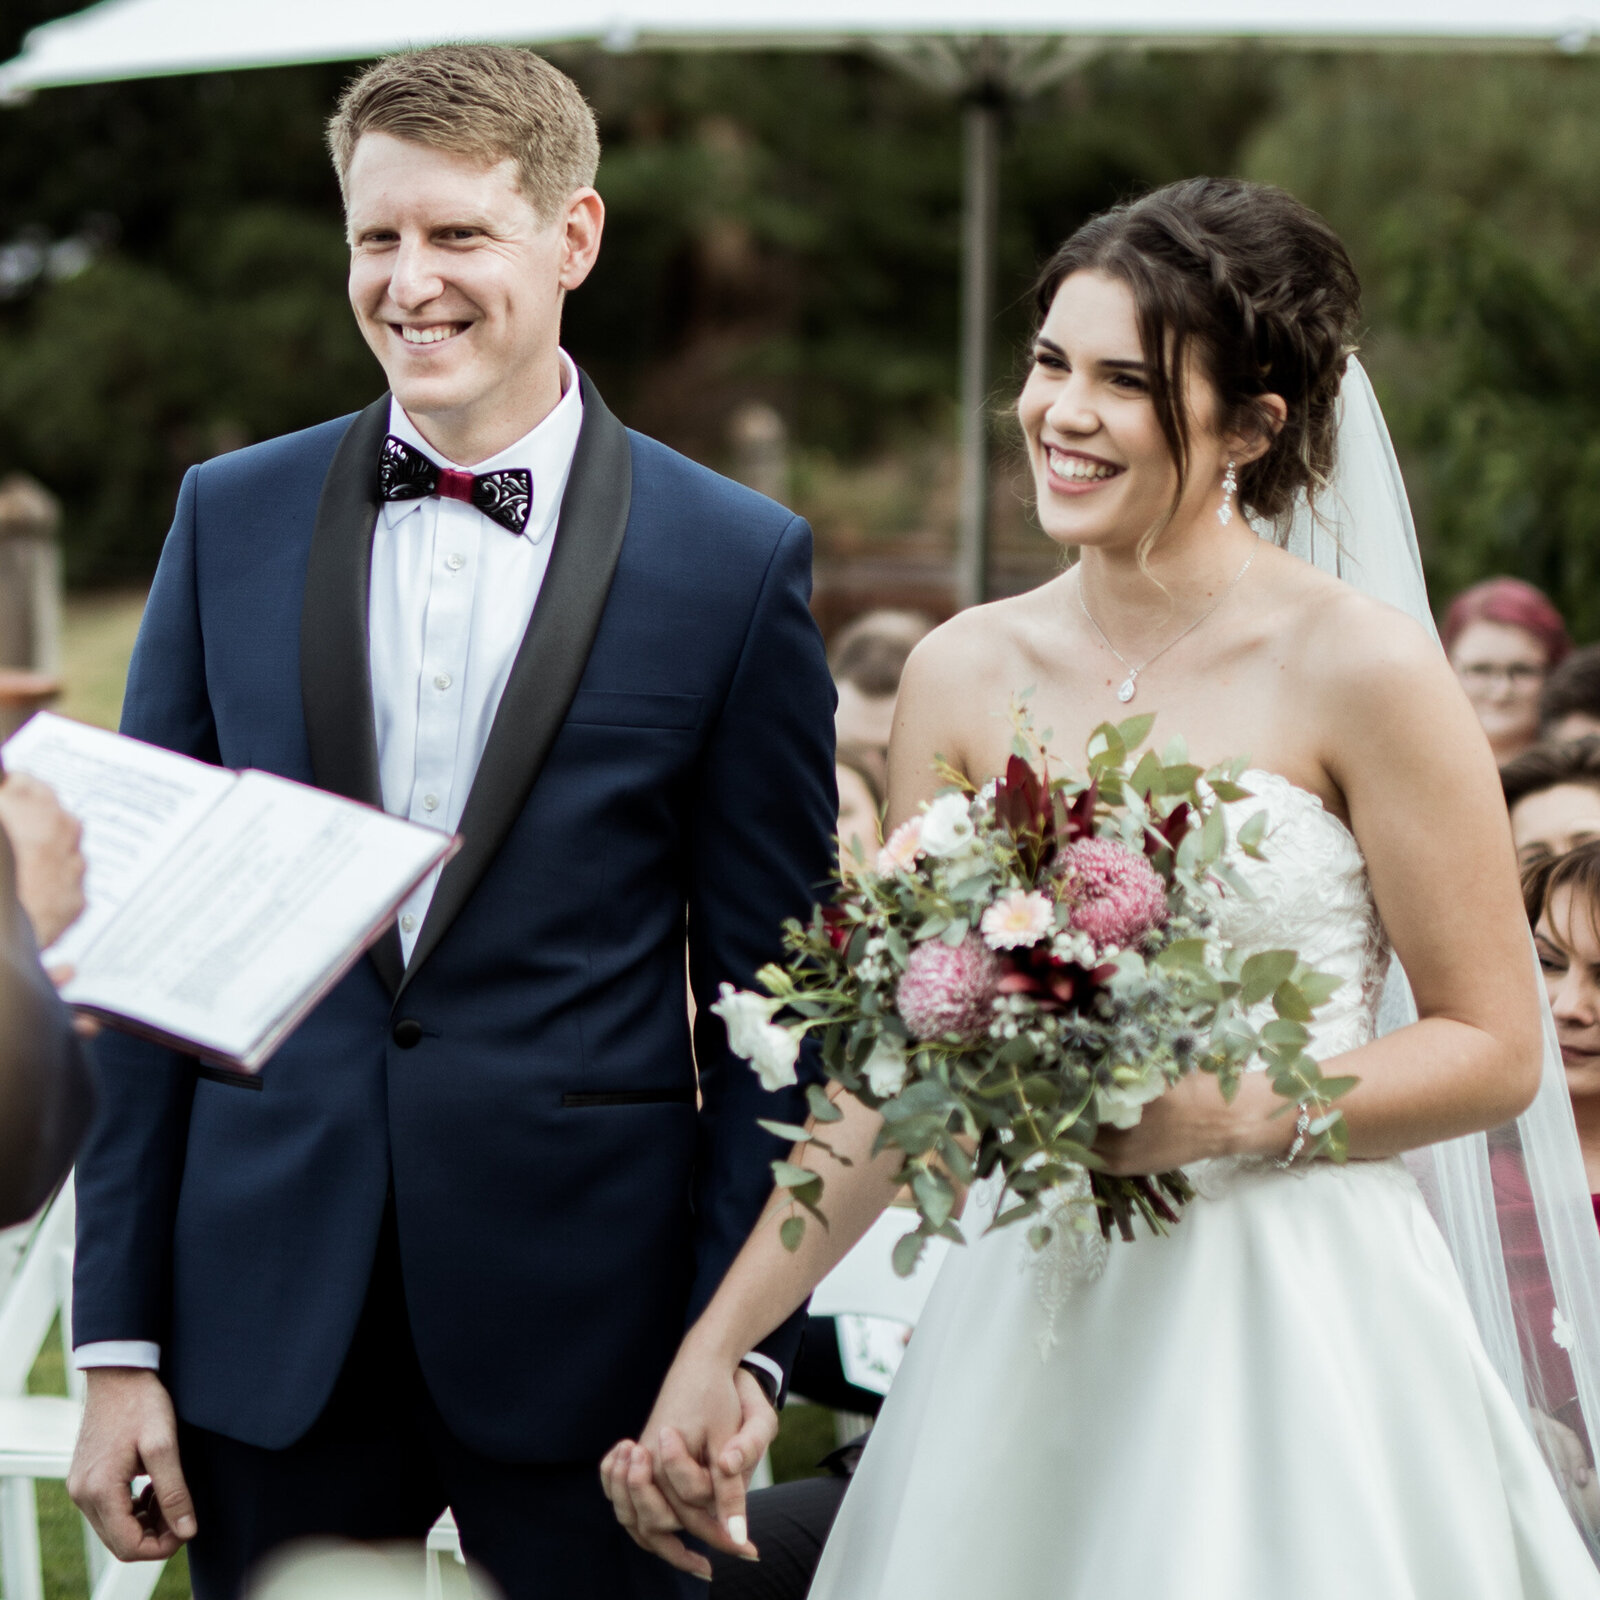 Marizelle-Rikus-Wedding-Rexvil-Photography-Adelaide-Wedding-Photographer-385